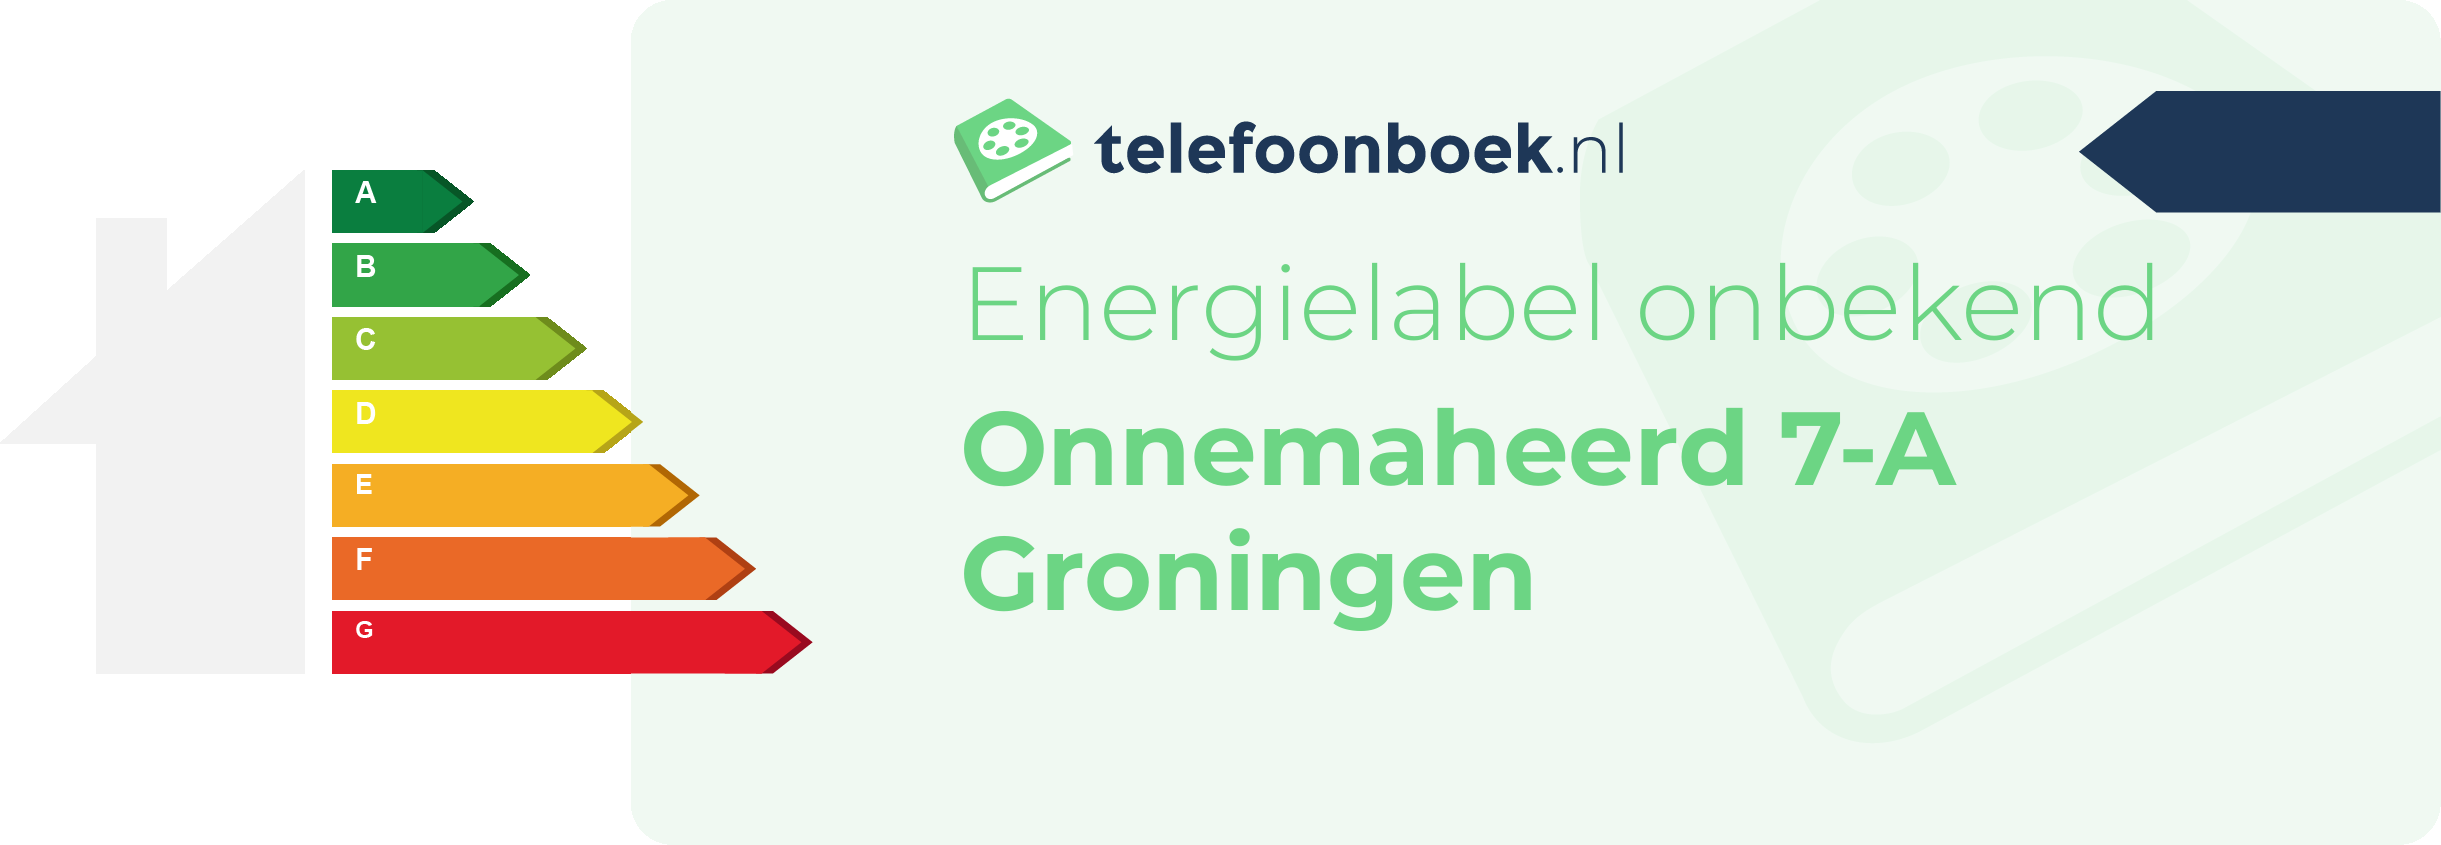 Energielabel Onnemaheerd 7-A Groningen